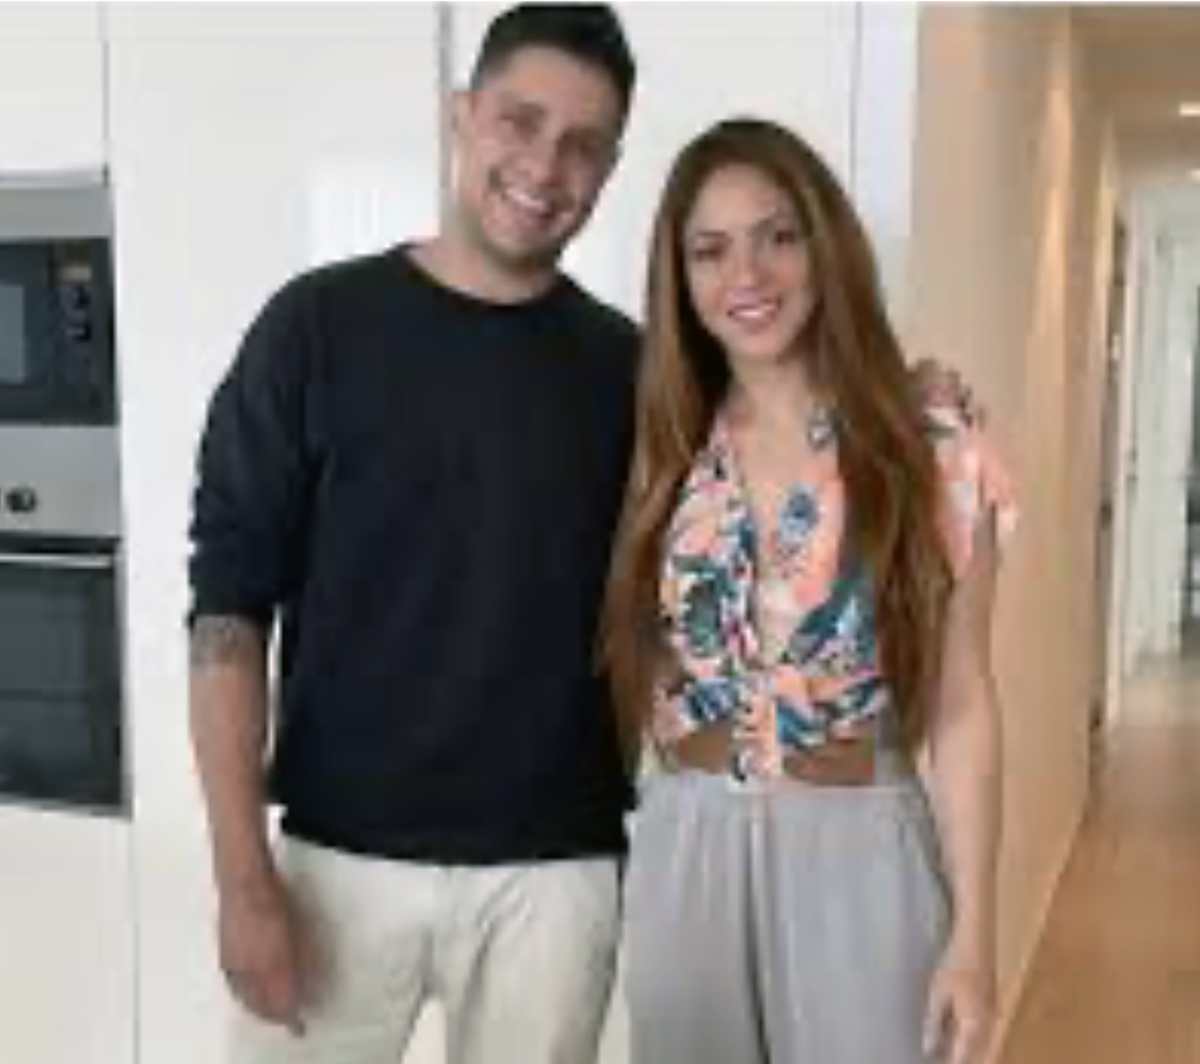 Shakira junto al chef que la abandonó por Piqué